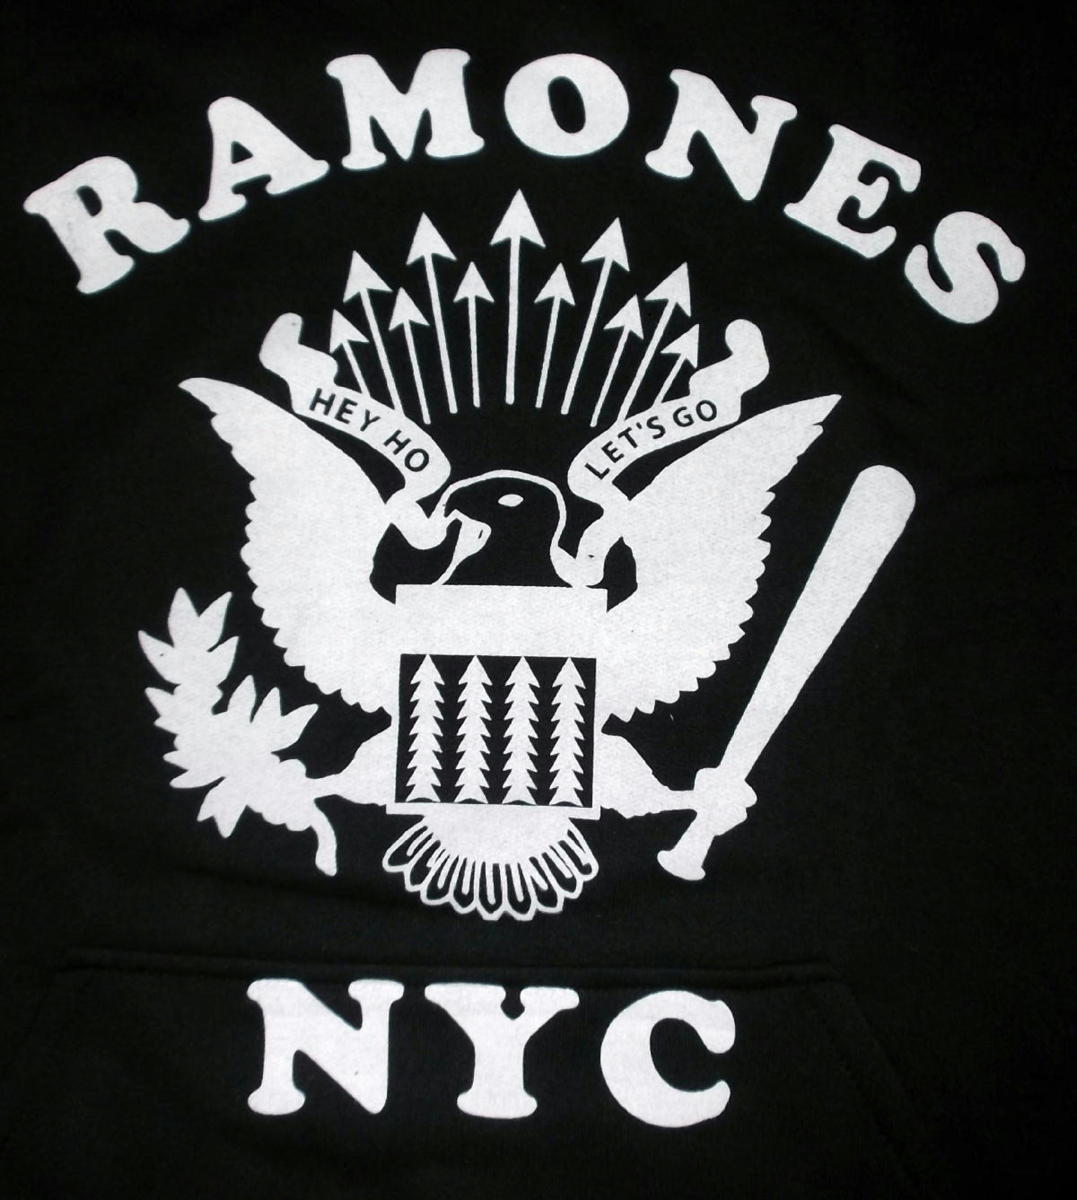 ★ラモーンズ パーカ RAMONES NYC - S 正規品 イーグル oi punk cbgb clash rancid